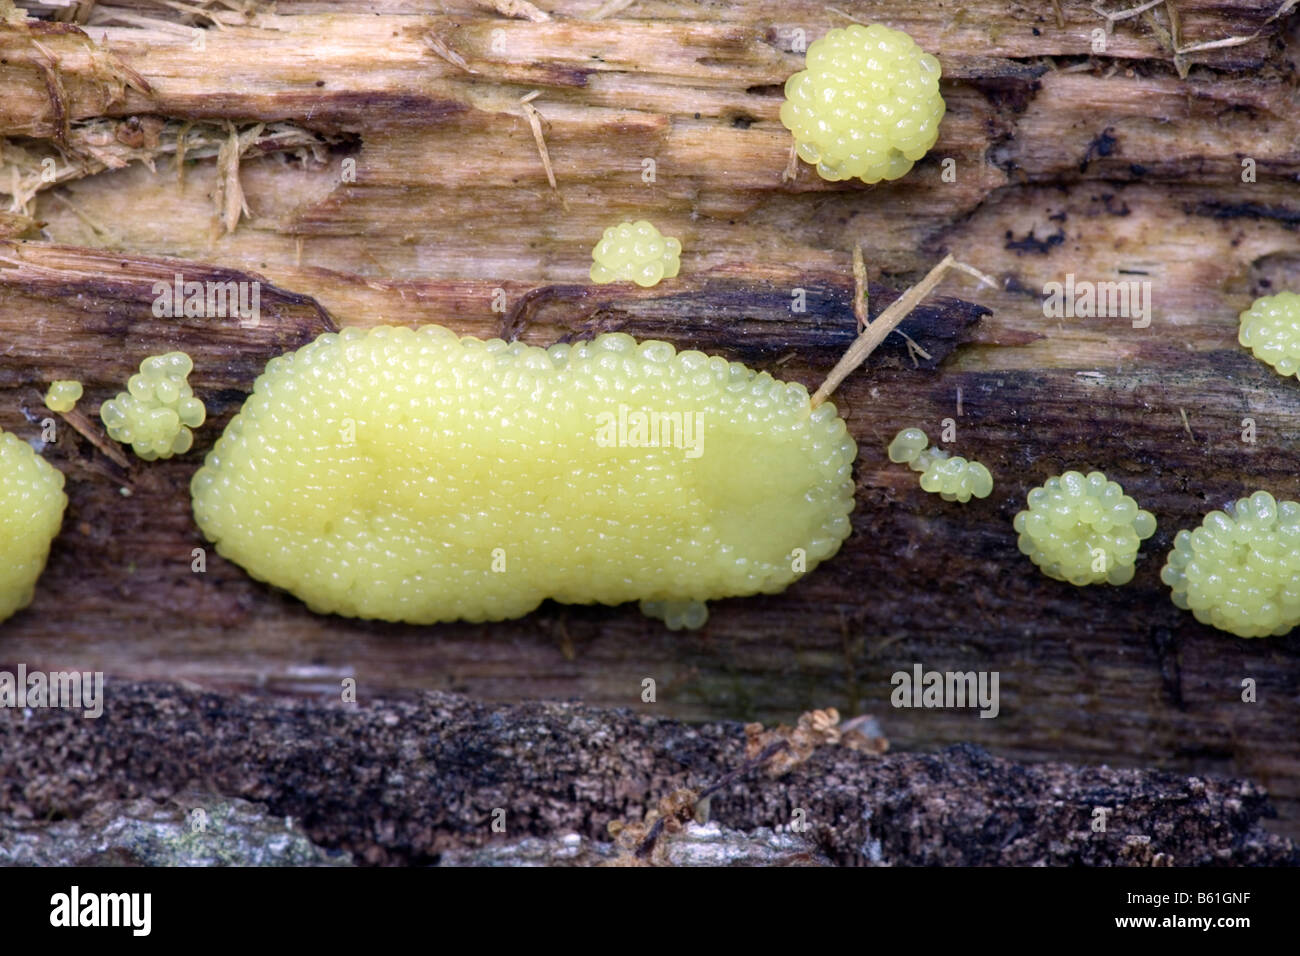 Slime mold on log Stock Photo